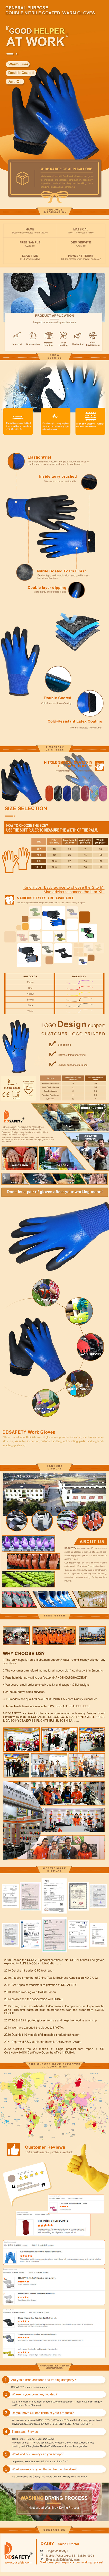 13 Gauge Nitrile Foam Coating on Nitrile Glove with Polyester/Nylon Knit Liner Blue - DNN922 13 Gauge Nitrile Foam Coating on Nitrile Glove with Polyester/Nylon Knit Liner Blue - DNN922 Maxiflex Gloves,Breathable Gloves,Nitrile Foam Coating on Nitrile Glove,Nitrile Foam Coating Glove